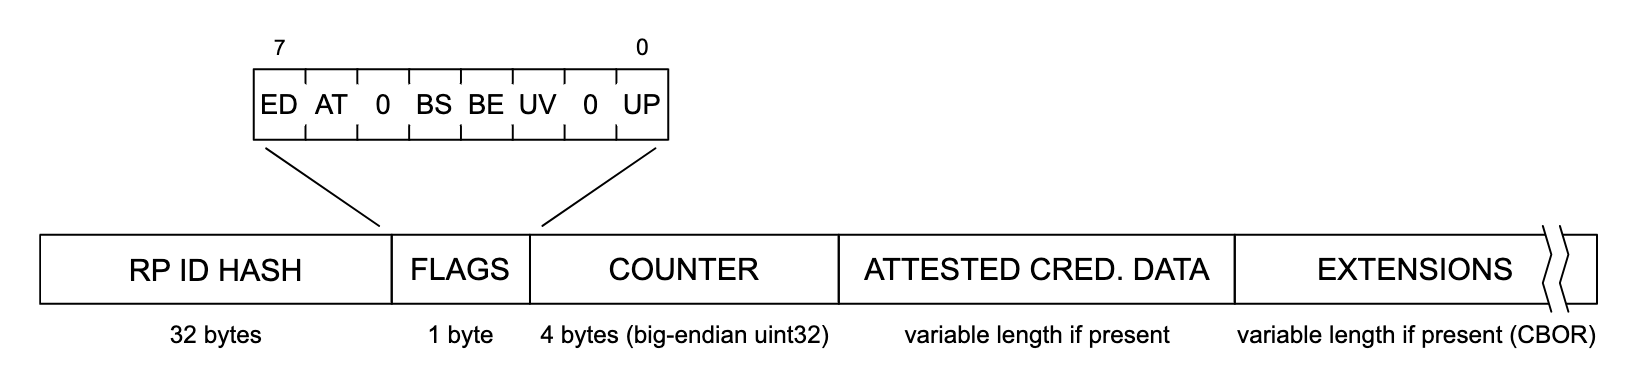 Penggambaran struktur data otentikasi. Dari kiri ke kanan, setiap bagian struktur data dibaca &#39;RP ID HASH&#39; (32 byte), &#39;FLAGS&#39; (1 byte), &#39;COUNTER&#39; (4 byte, big-endian uint32), &#39;ATTESTE CRED. DATA&#39; (panjang variabel jika ada), dan &#39;EXTENSIONS&#39; (panjang variabel jika ada (CBOR)). Bagian &#39;FLAGS&#39; diperluas untuk menampilkan daftar tanda potensial, yang diberi label dari kiri ke kanan: &#39;ED&#39;, &#39;AT&#39;, &#39;0&#39;, &#39;BS&#39;, &#39;BE&#39;, &#39;UV&#39;, &#39;0&#39;, dan &#39;UP&#39;.